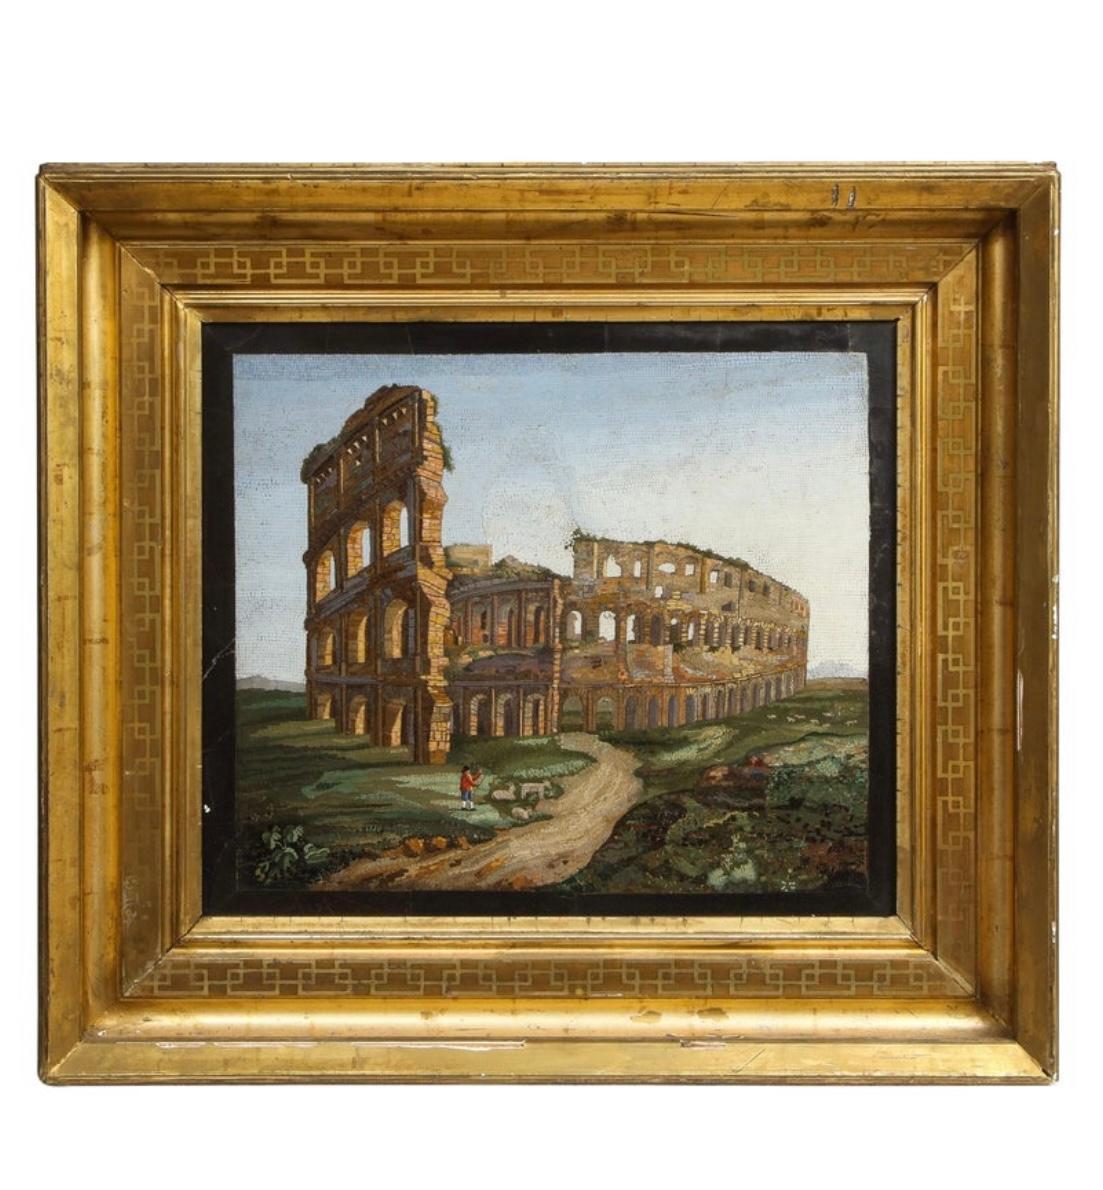 Bedeutendes großes Mikromosaik mit der Darstellung des Kolosseums in Rom

CIRCA 1850er Jahre, Italien

Abmessungen: Mikromosaik ohne Rahmen: ca. 16,75 x 19,25 Zoll
Rahmen: ca. 28,38 x 25,63 Zoll.
